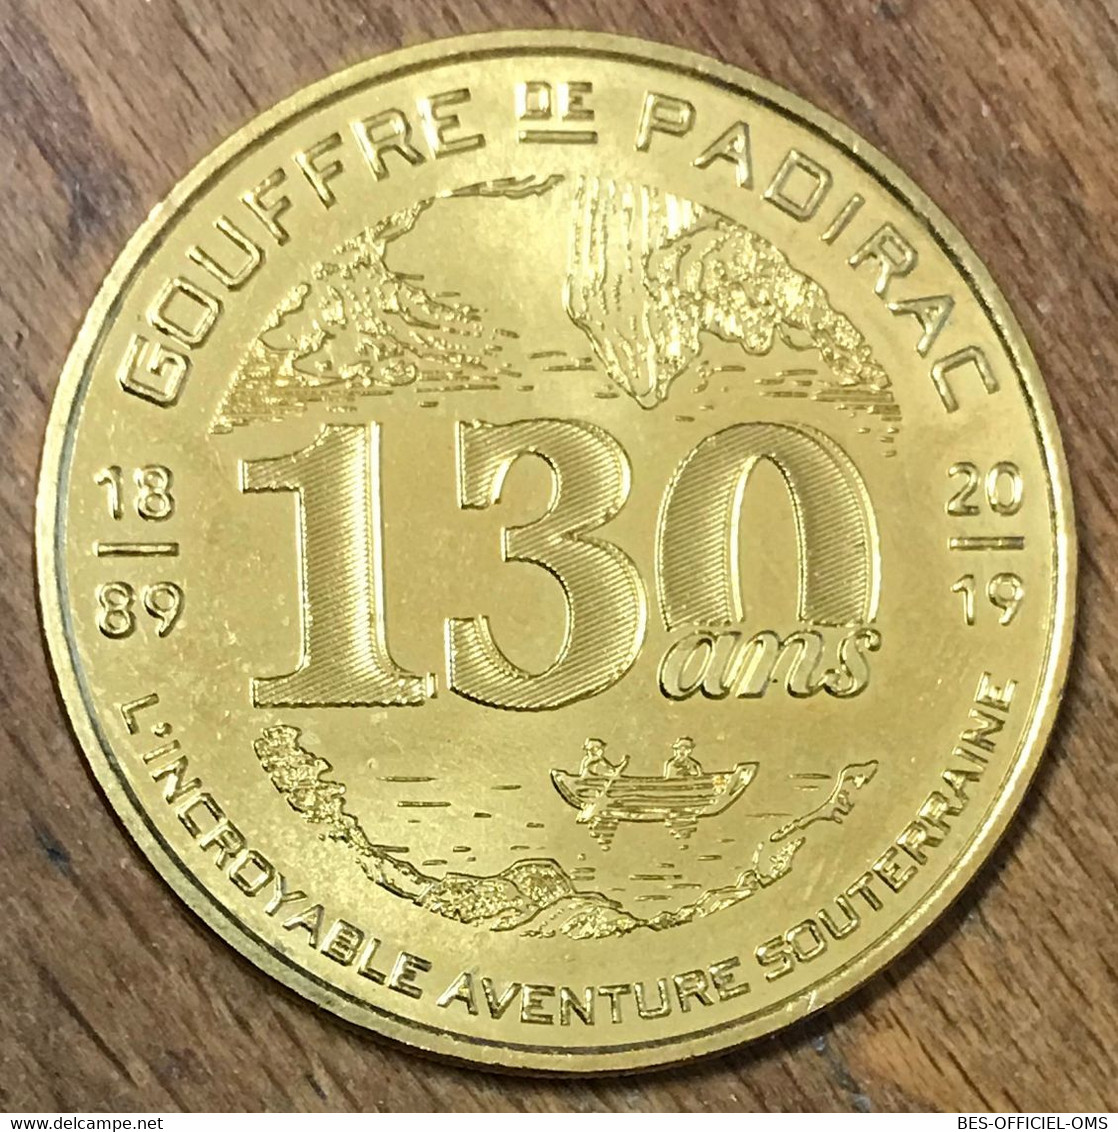 46 LE GOUFFRE DE PADIRAC 130 ANS MDP 2019 MINI MÉDAILLE SOUVENIR MONNAIE DE PARIS JETON TOURISTIQUE TOKENS MEDALS COINS - 2019